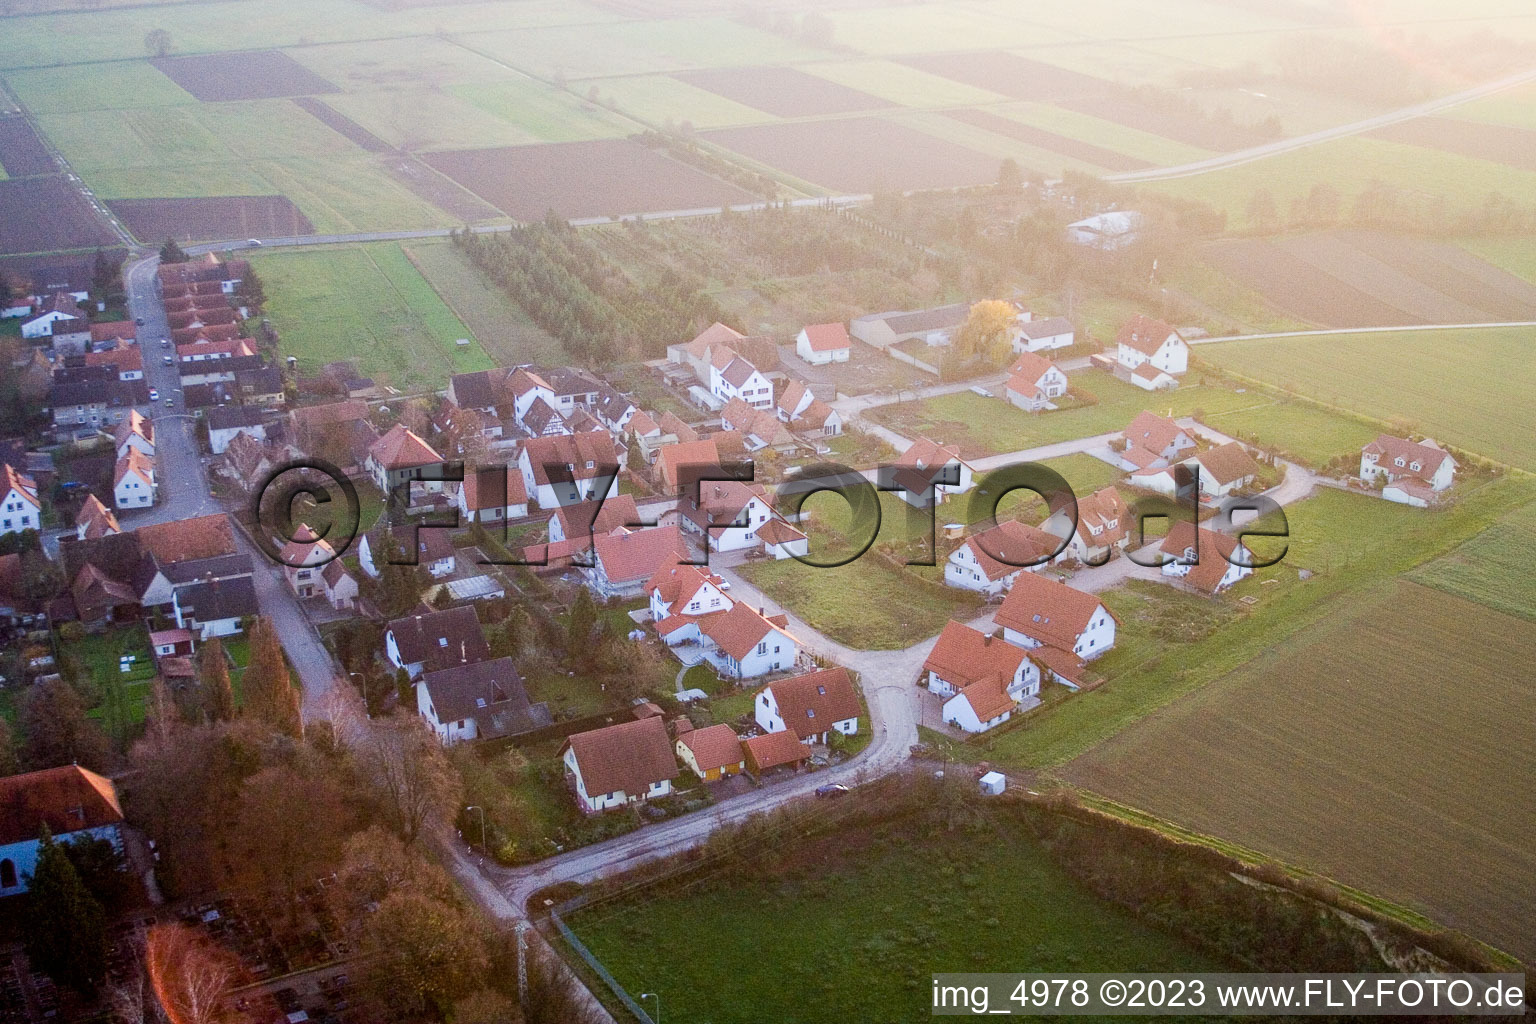 Vue aérienne de Nouvelle zone de développement Am Brennofen à Freckenfeld dans le département Rhénanie-Palatinat, Allemagne